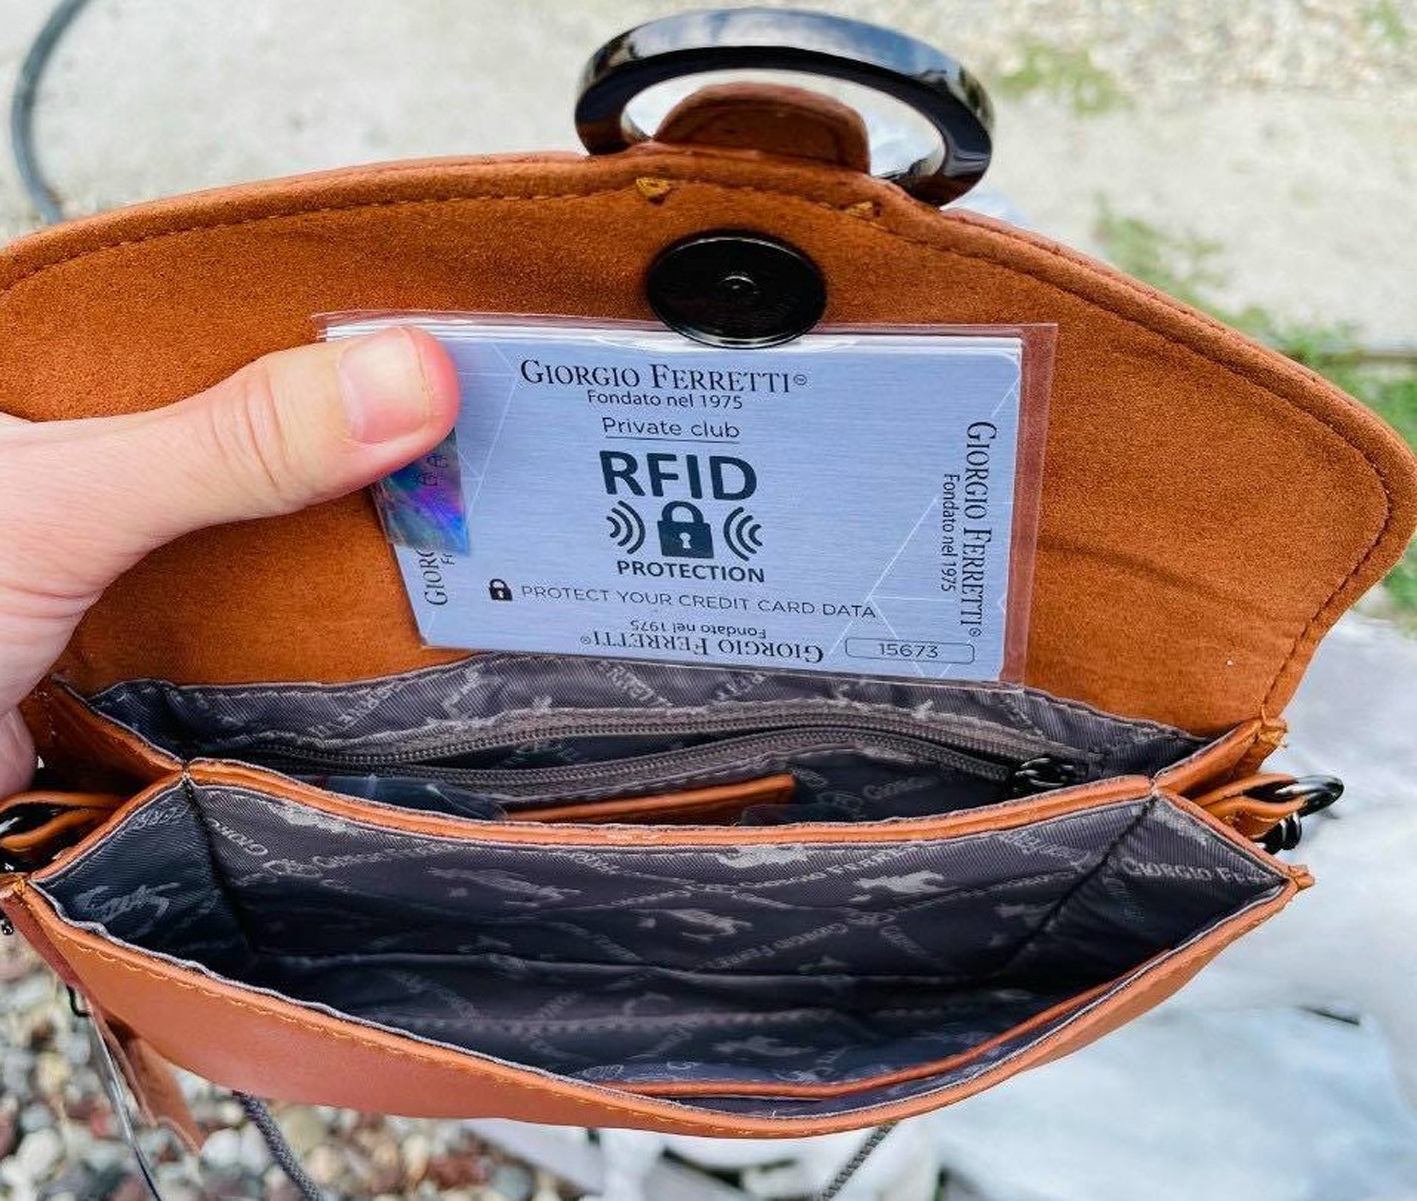 Rất nhiều sản phẩm ví, túi rao bán trên mạng được quảng cáo có khả năng chặn sóng RFID - ẢNH: T. HOA